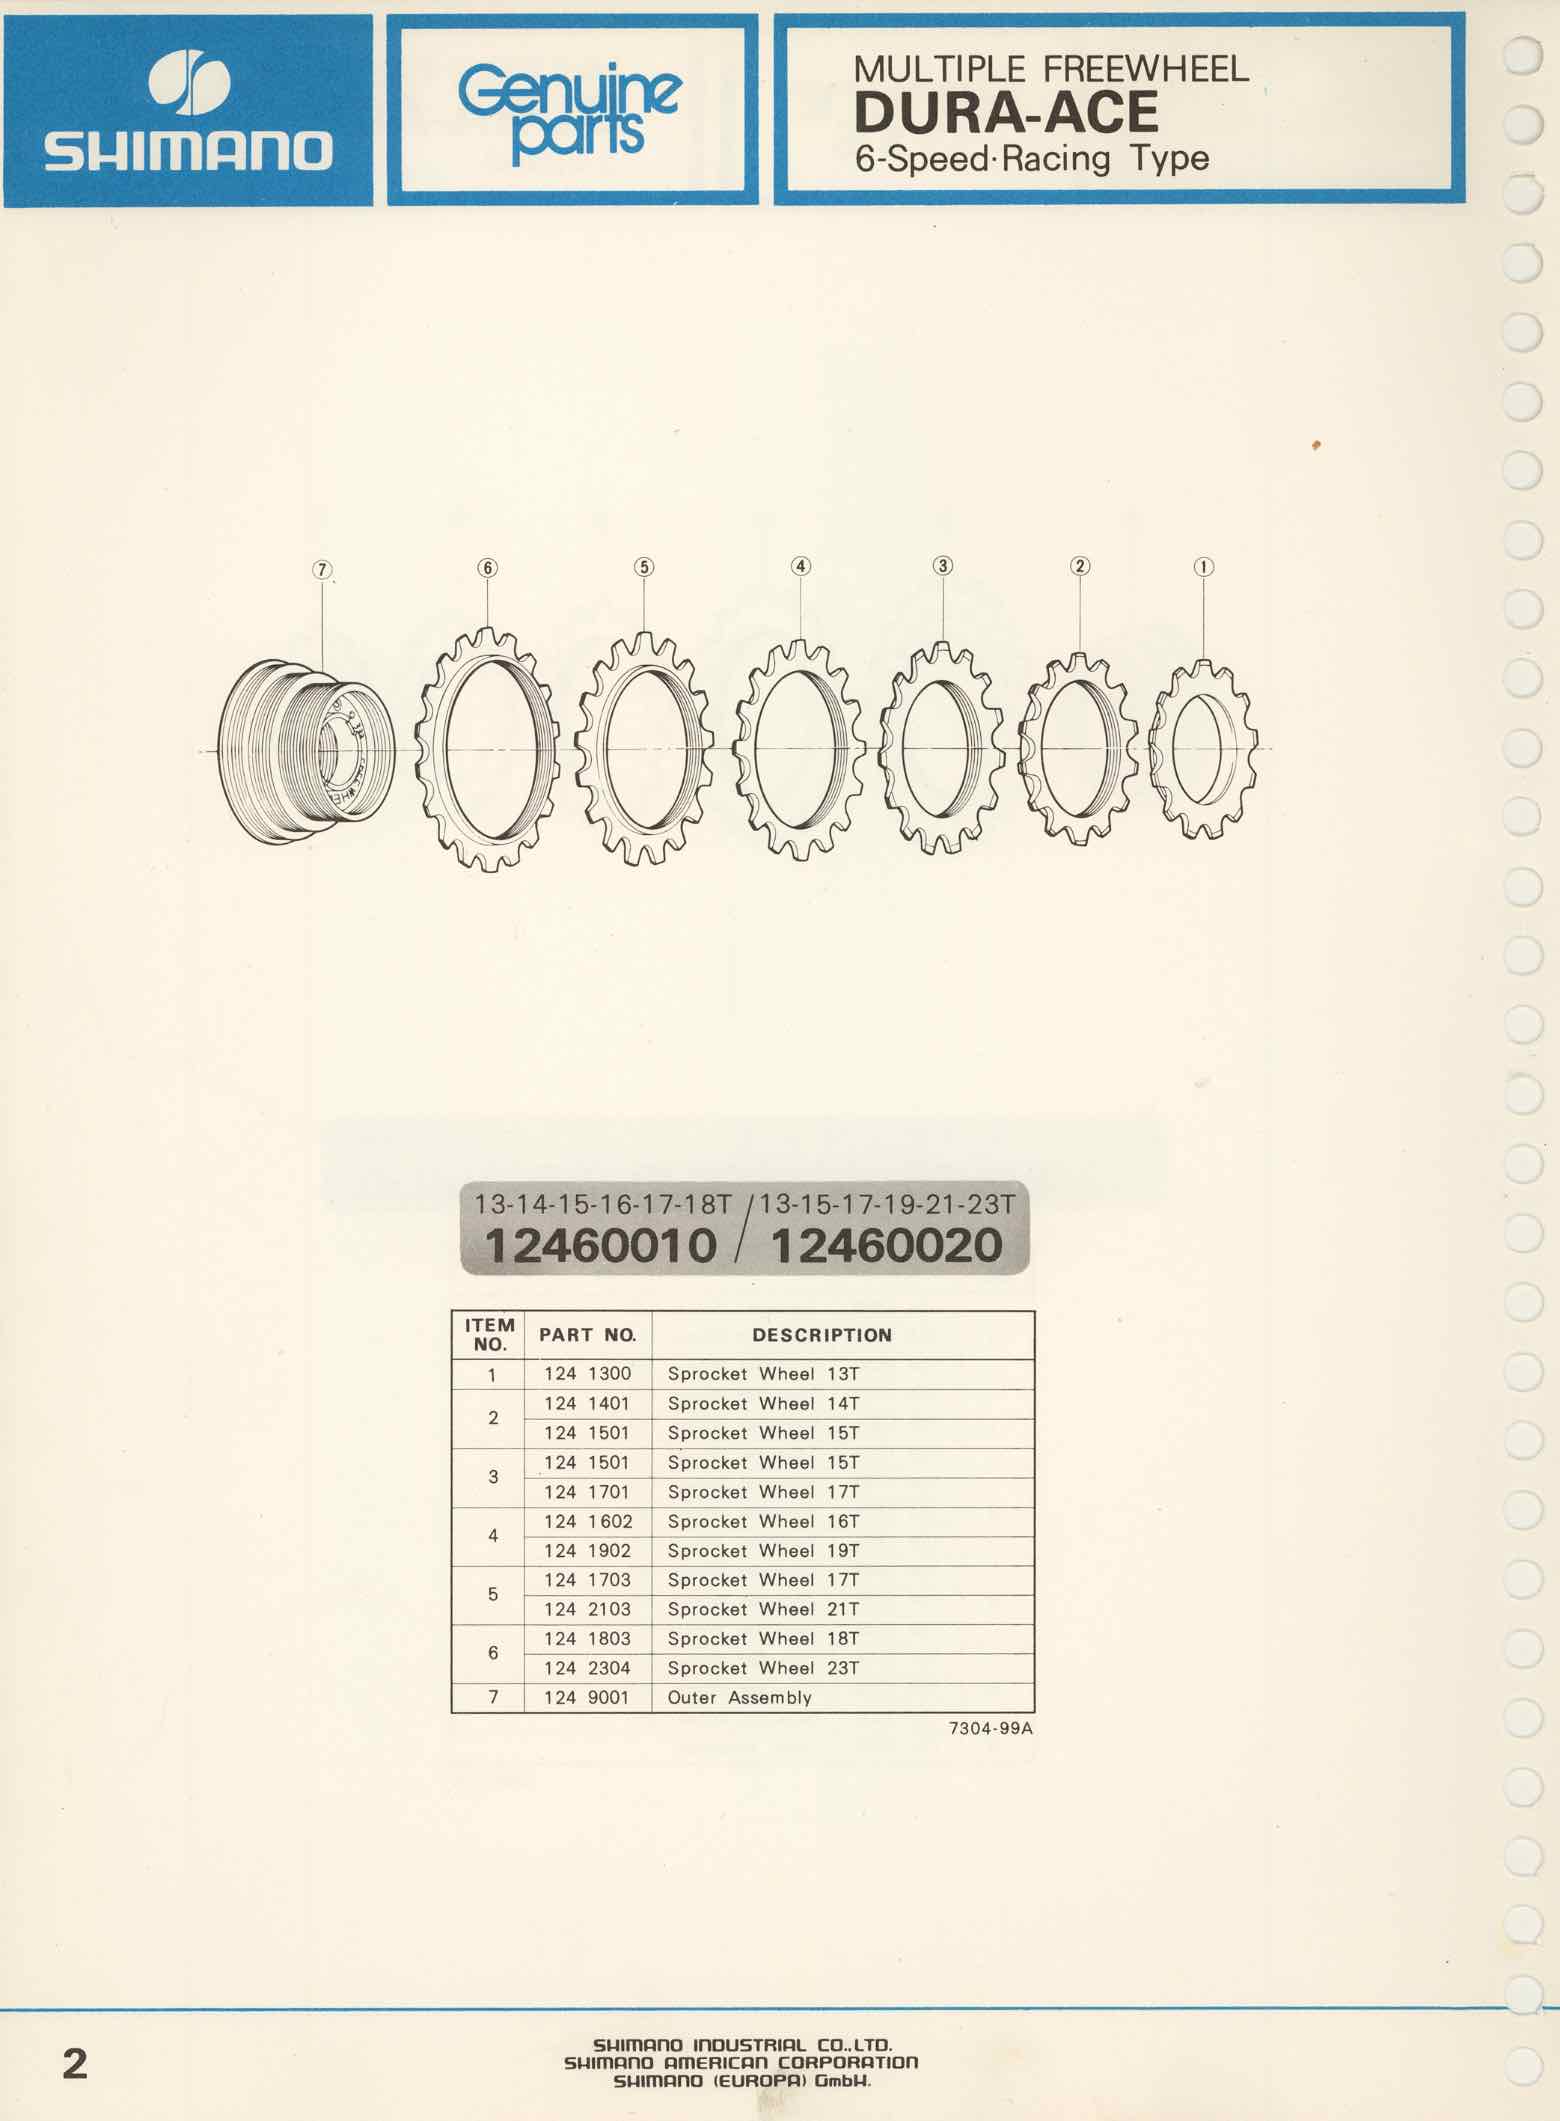 Shimano Bicycle Parts Catalog - 1973 page 2 main image